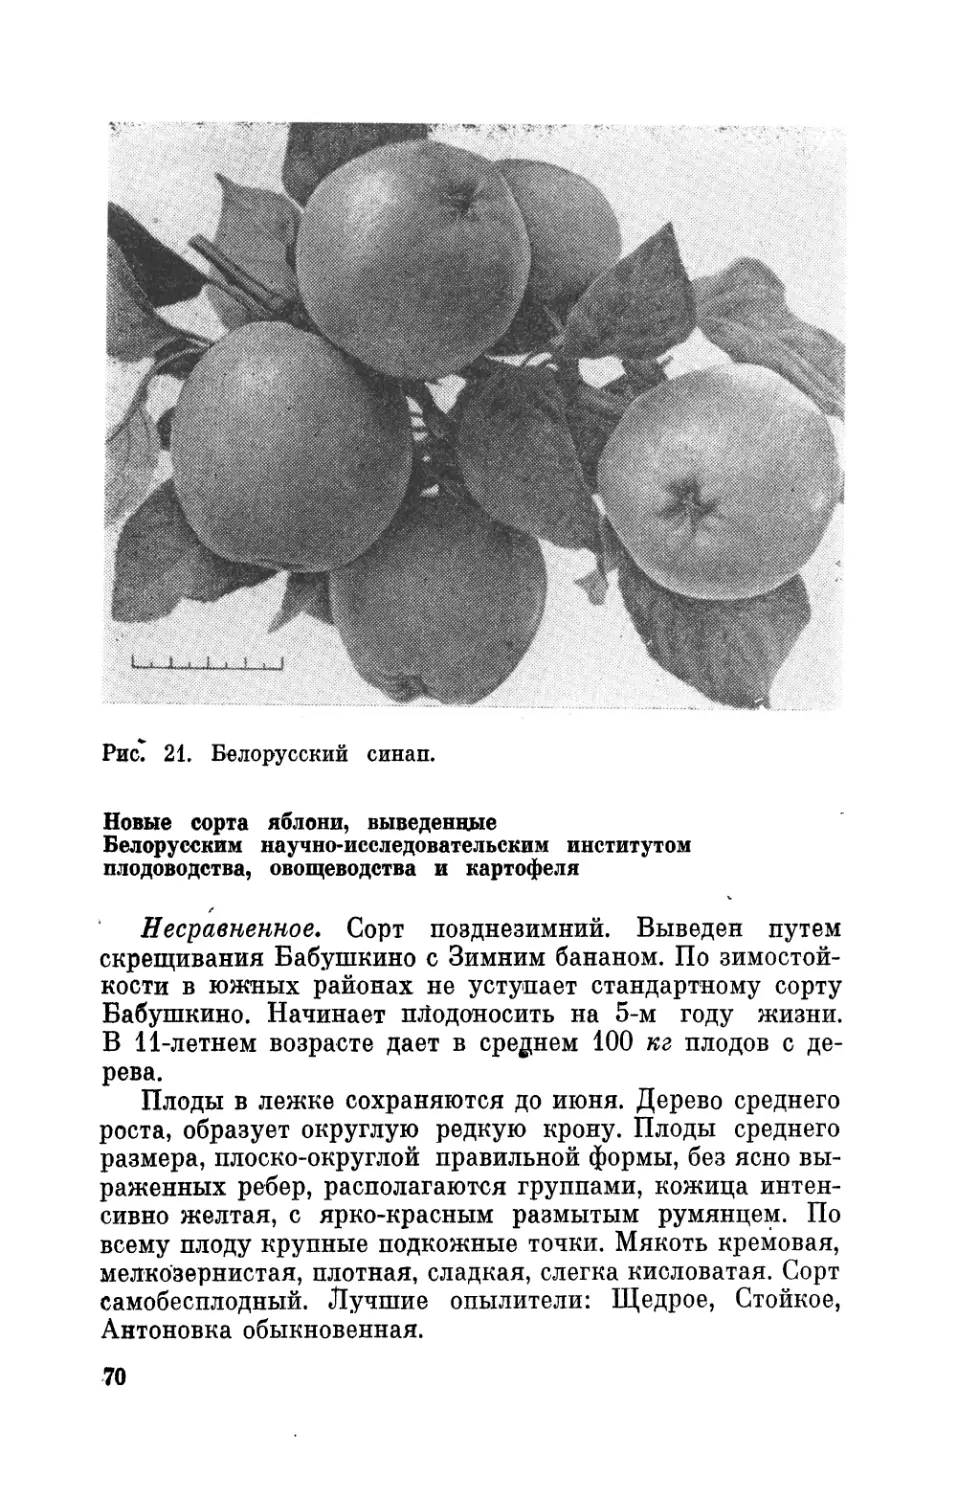 Новые сорта яблони, выведенные Белорусским научно-исследовательским институтом плодоводства, овощеводства и картофеля